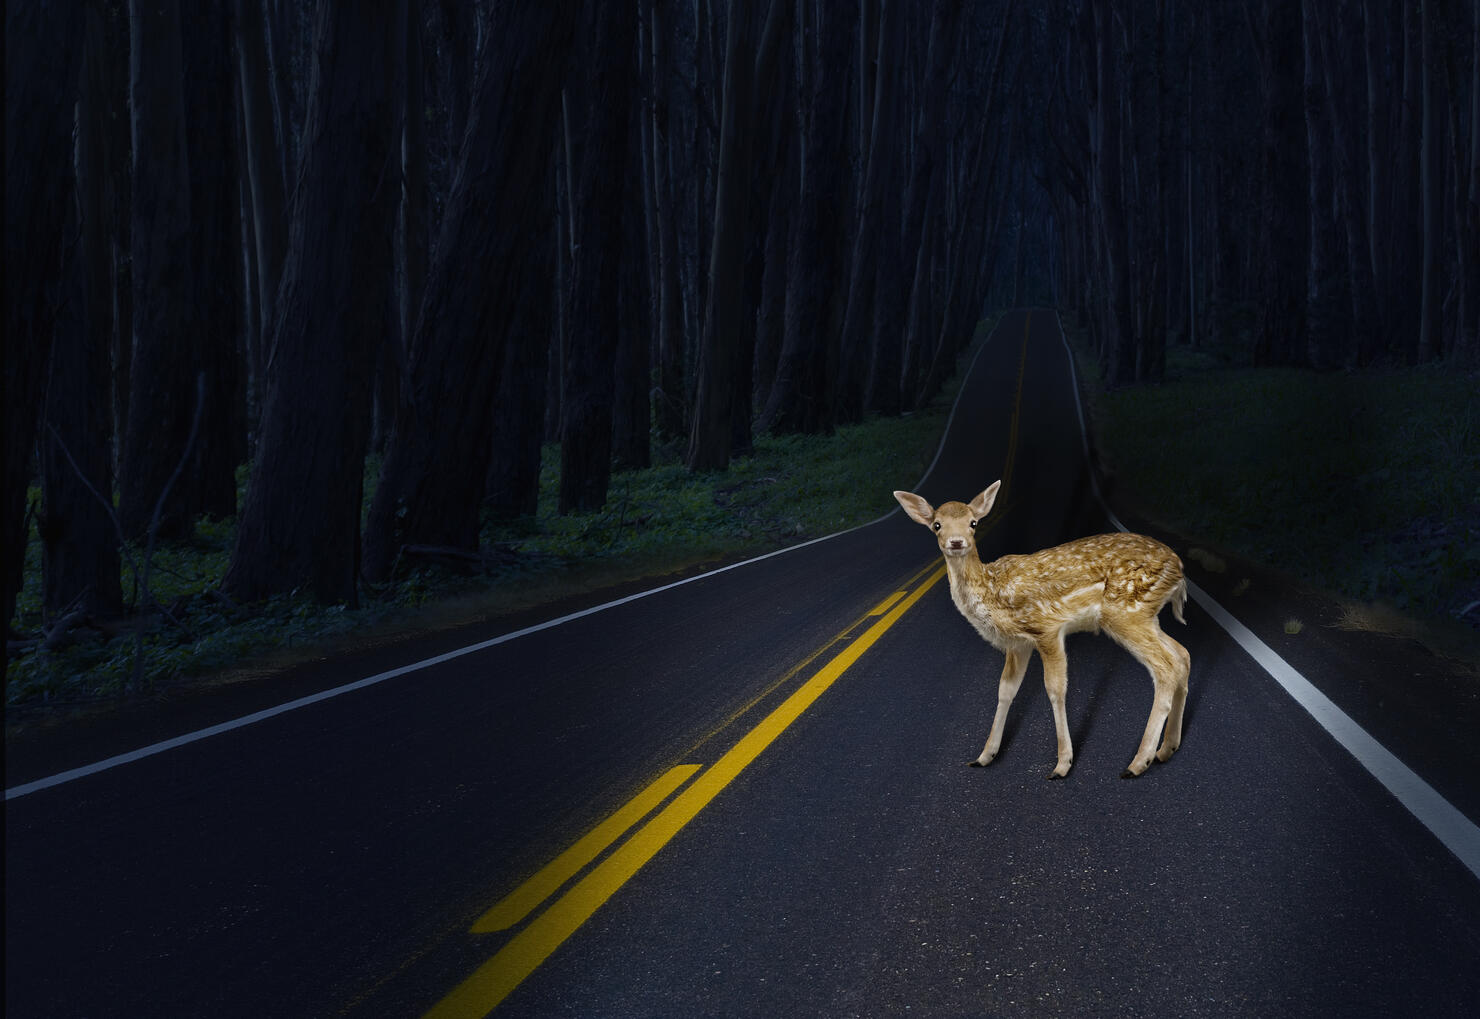 Deer caught in headlights on rural road